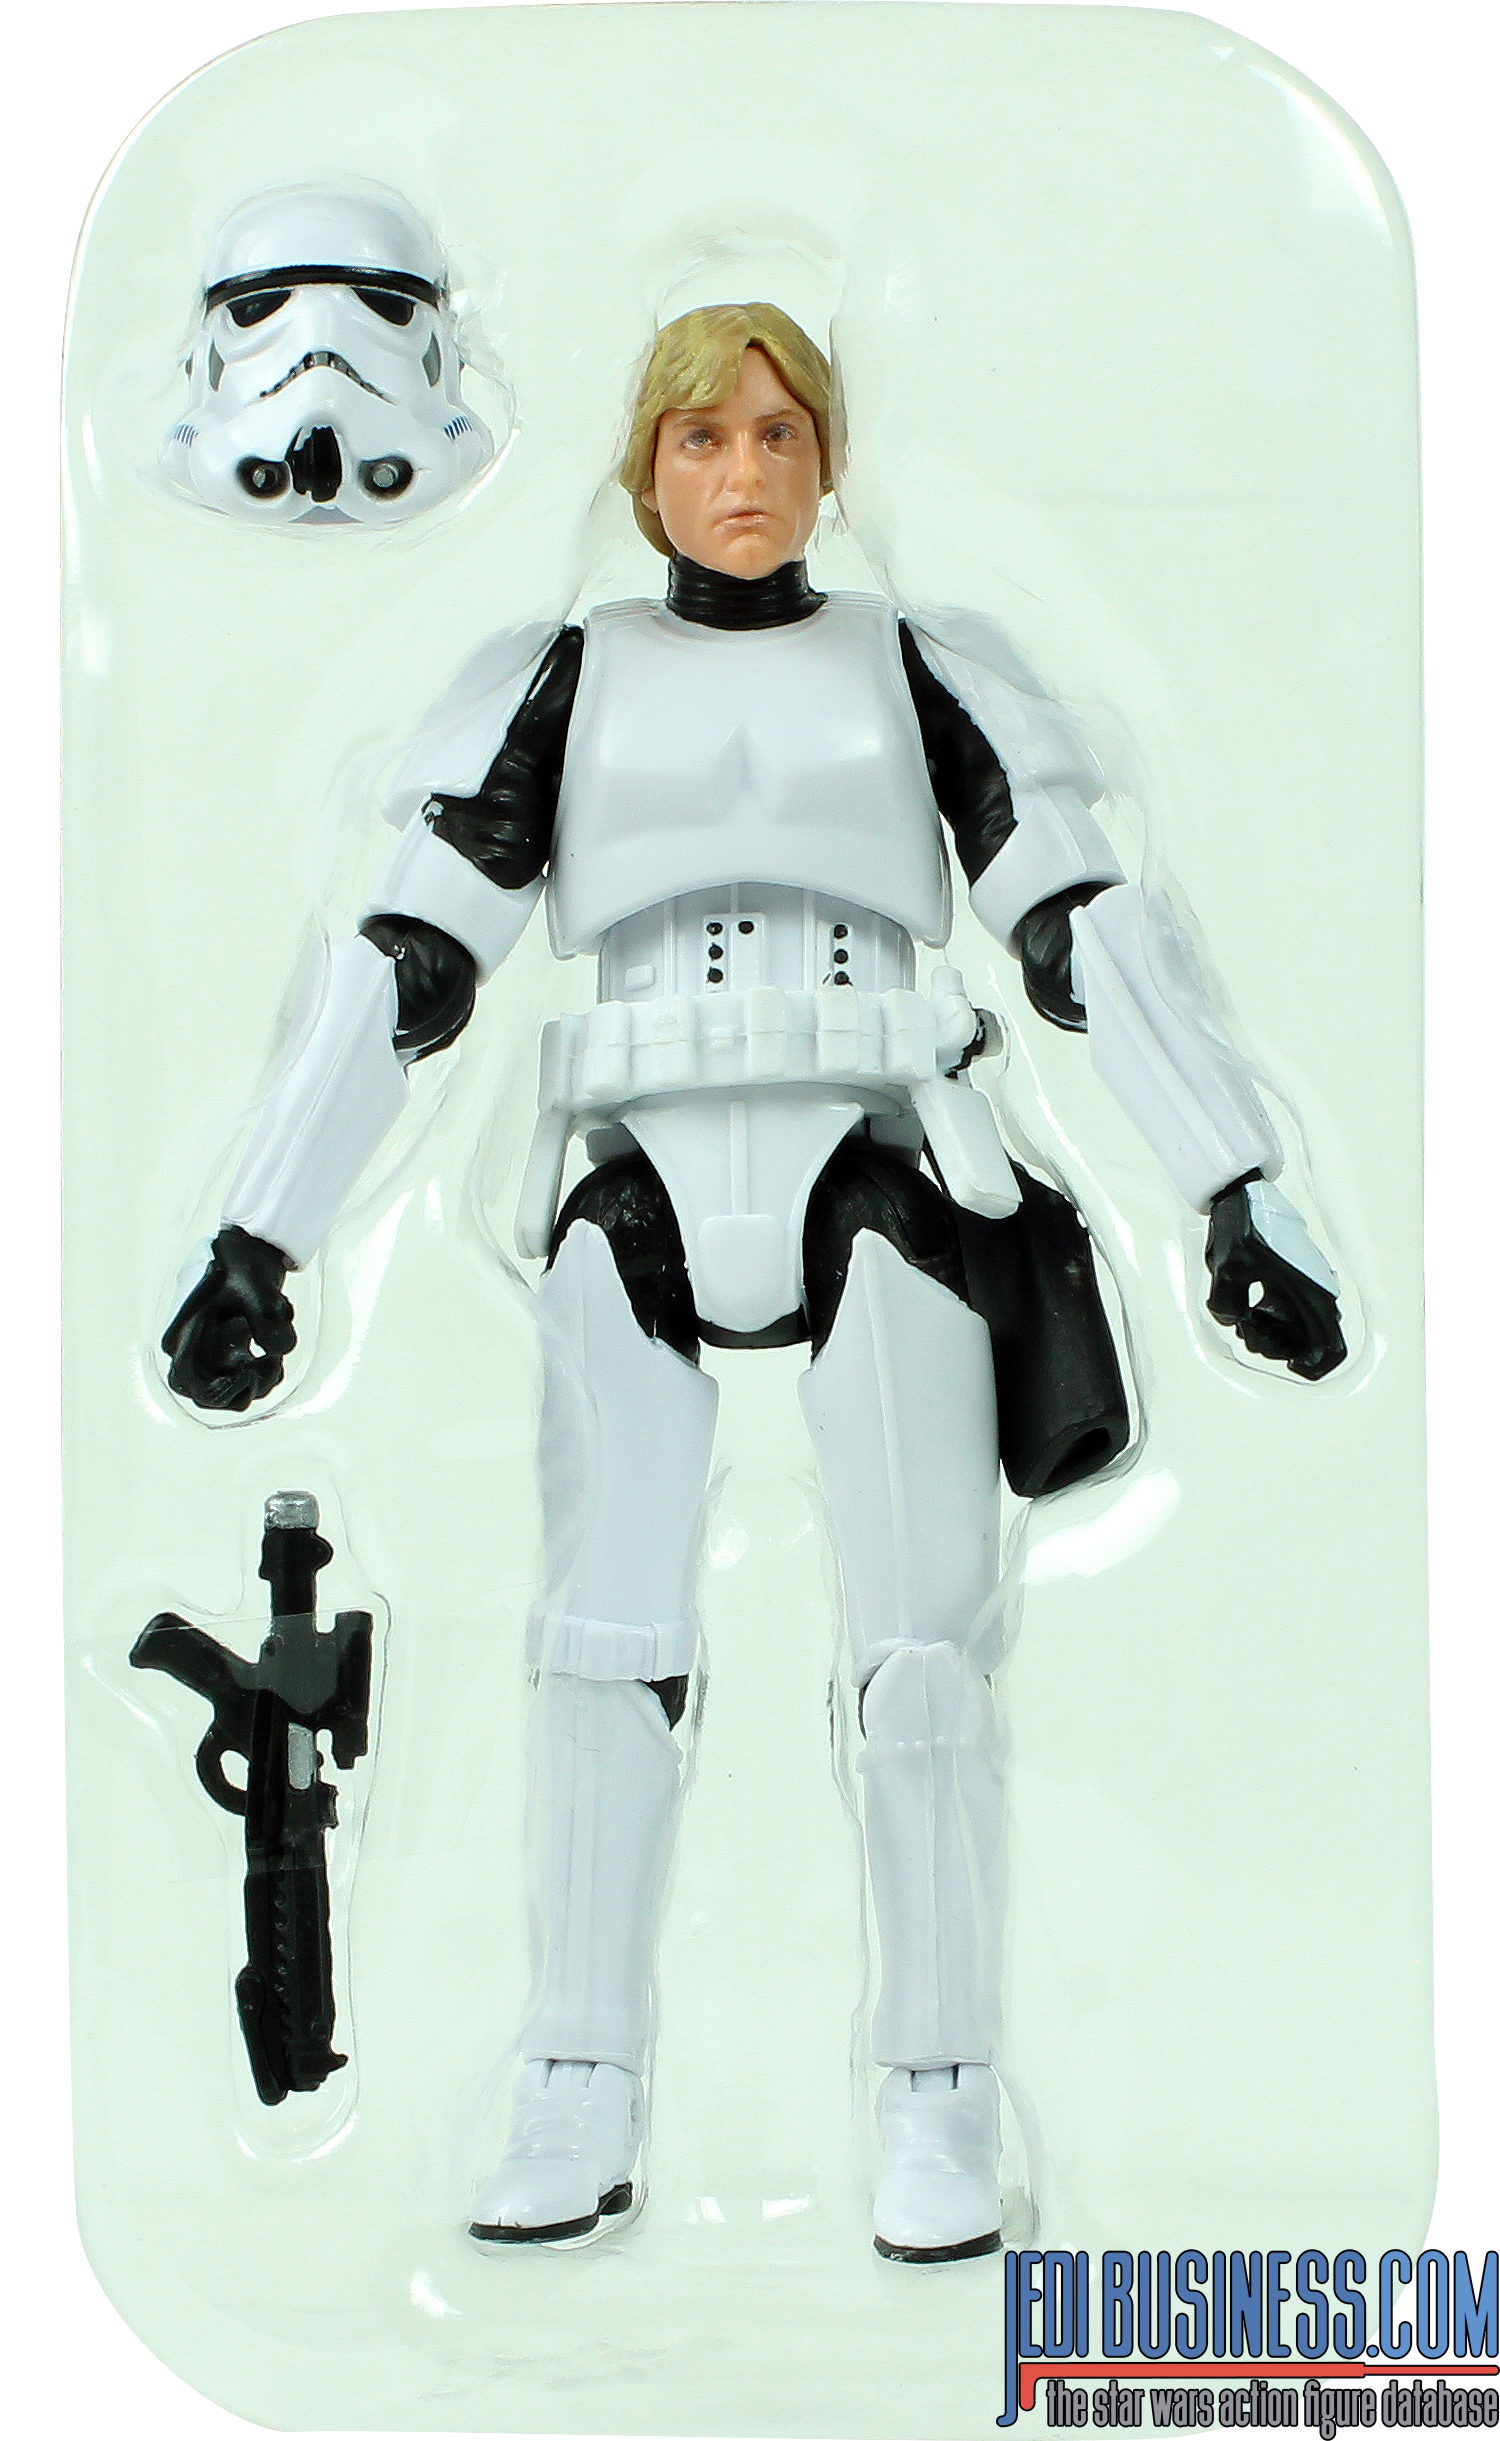 Luke Skywalker Stormtrooper